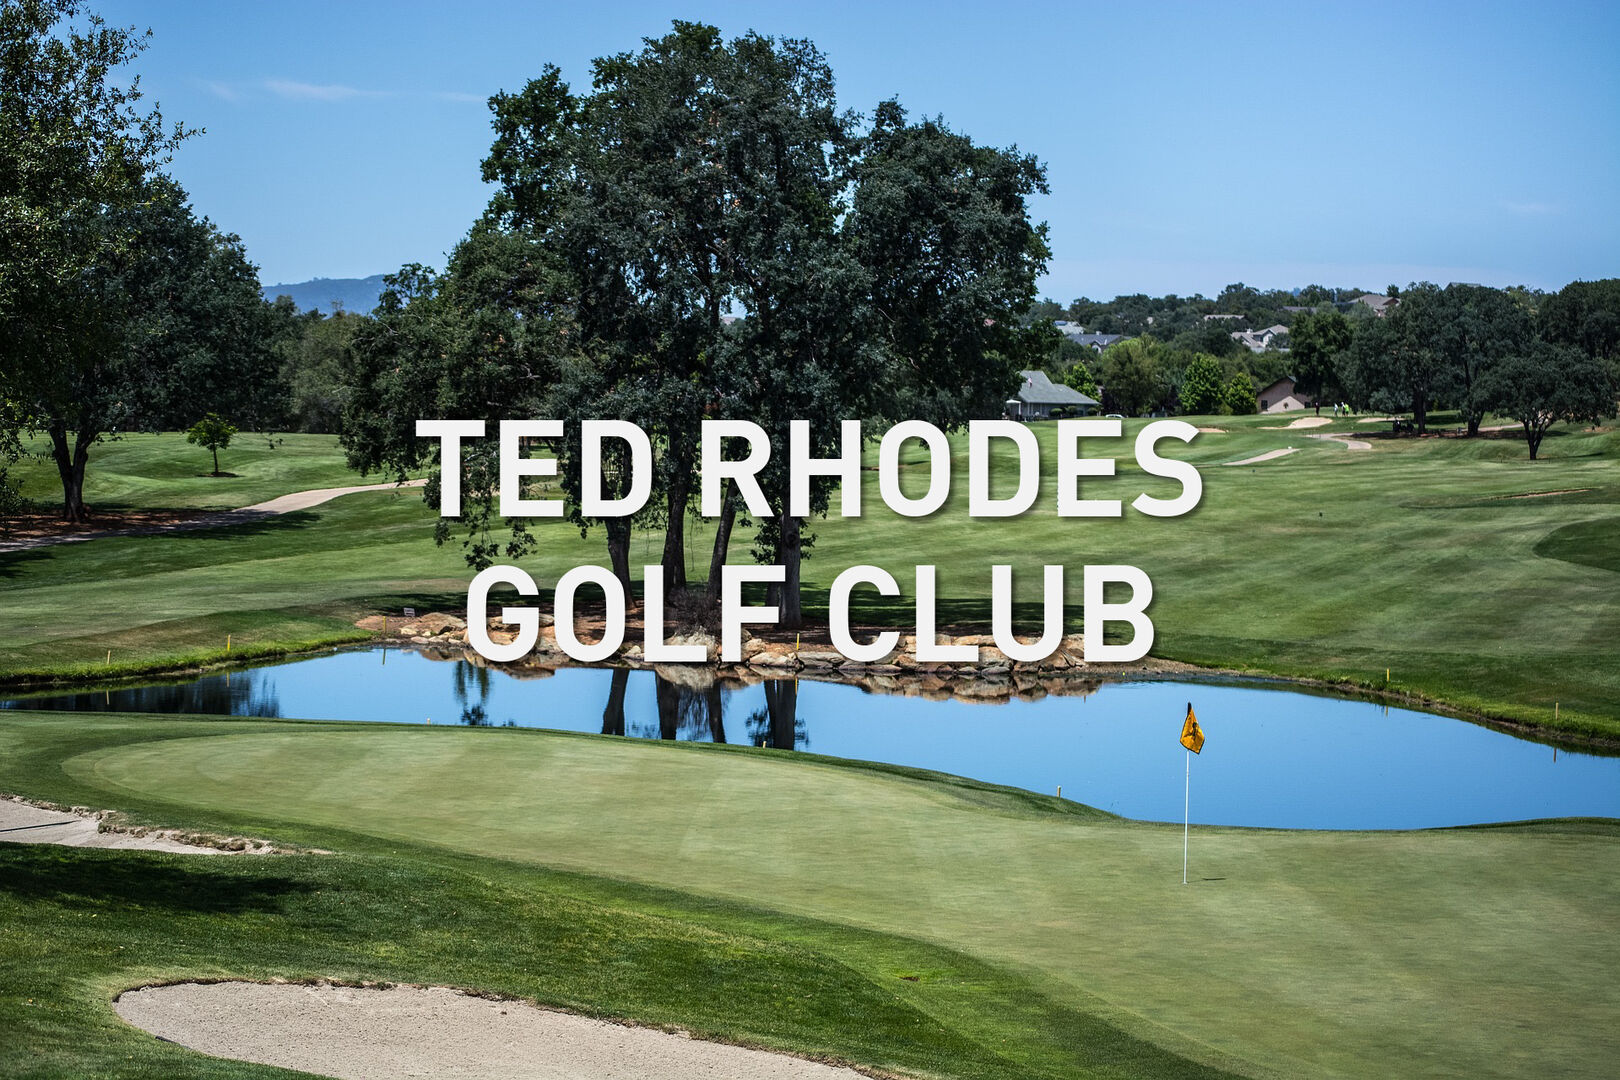 25 mins: Ted Rhodes Golf Club